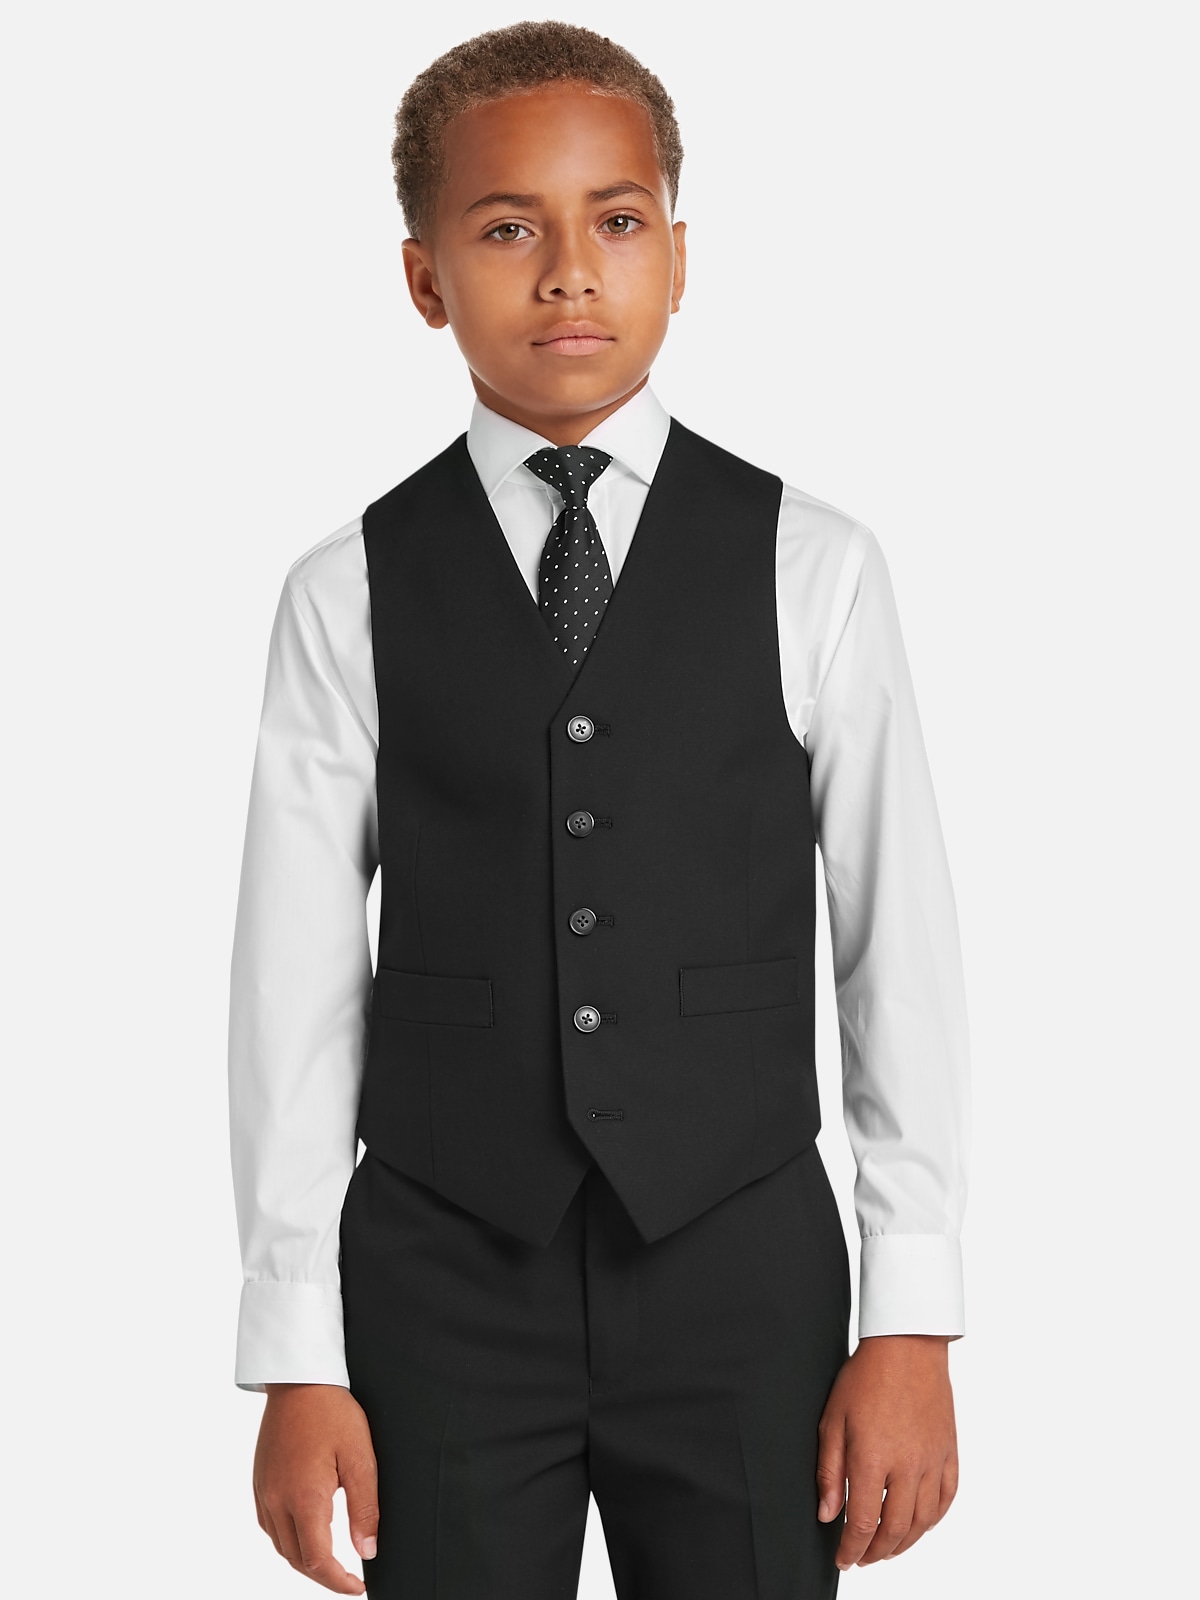 Joseph Abboud Boys Men's Suit Separates Vest at Men's Wearhouse, Charcoal Gray - Size: Boys 8